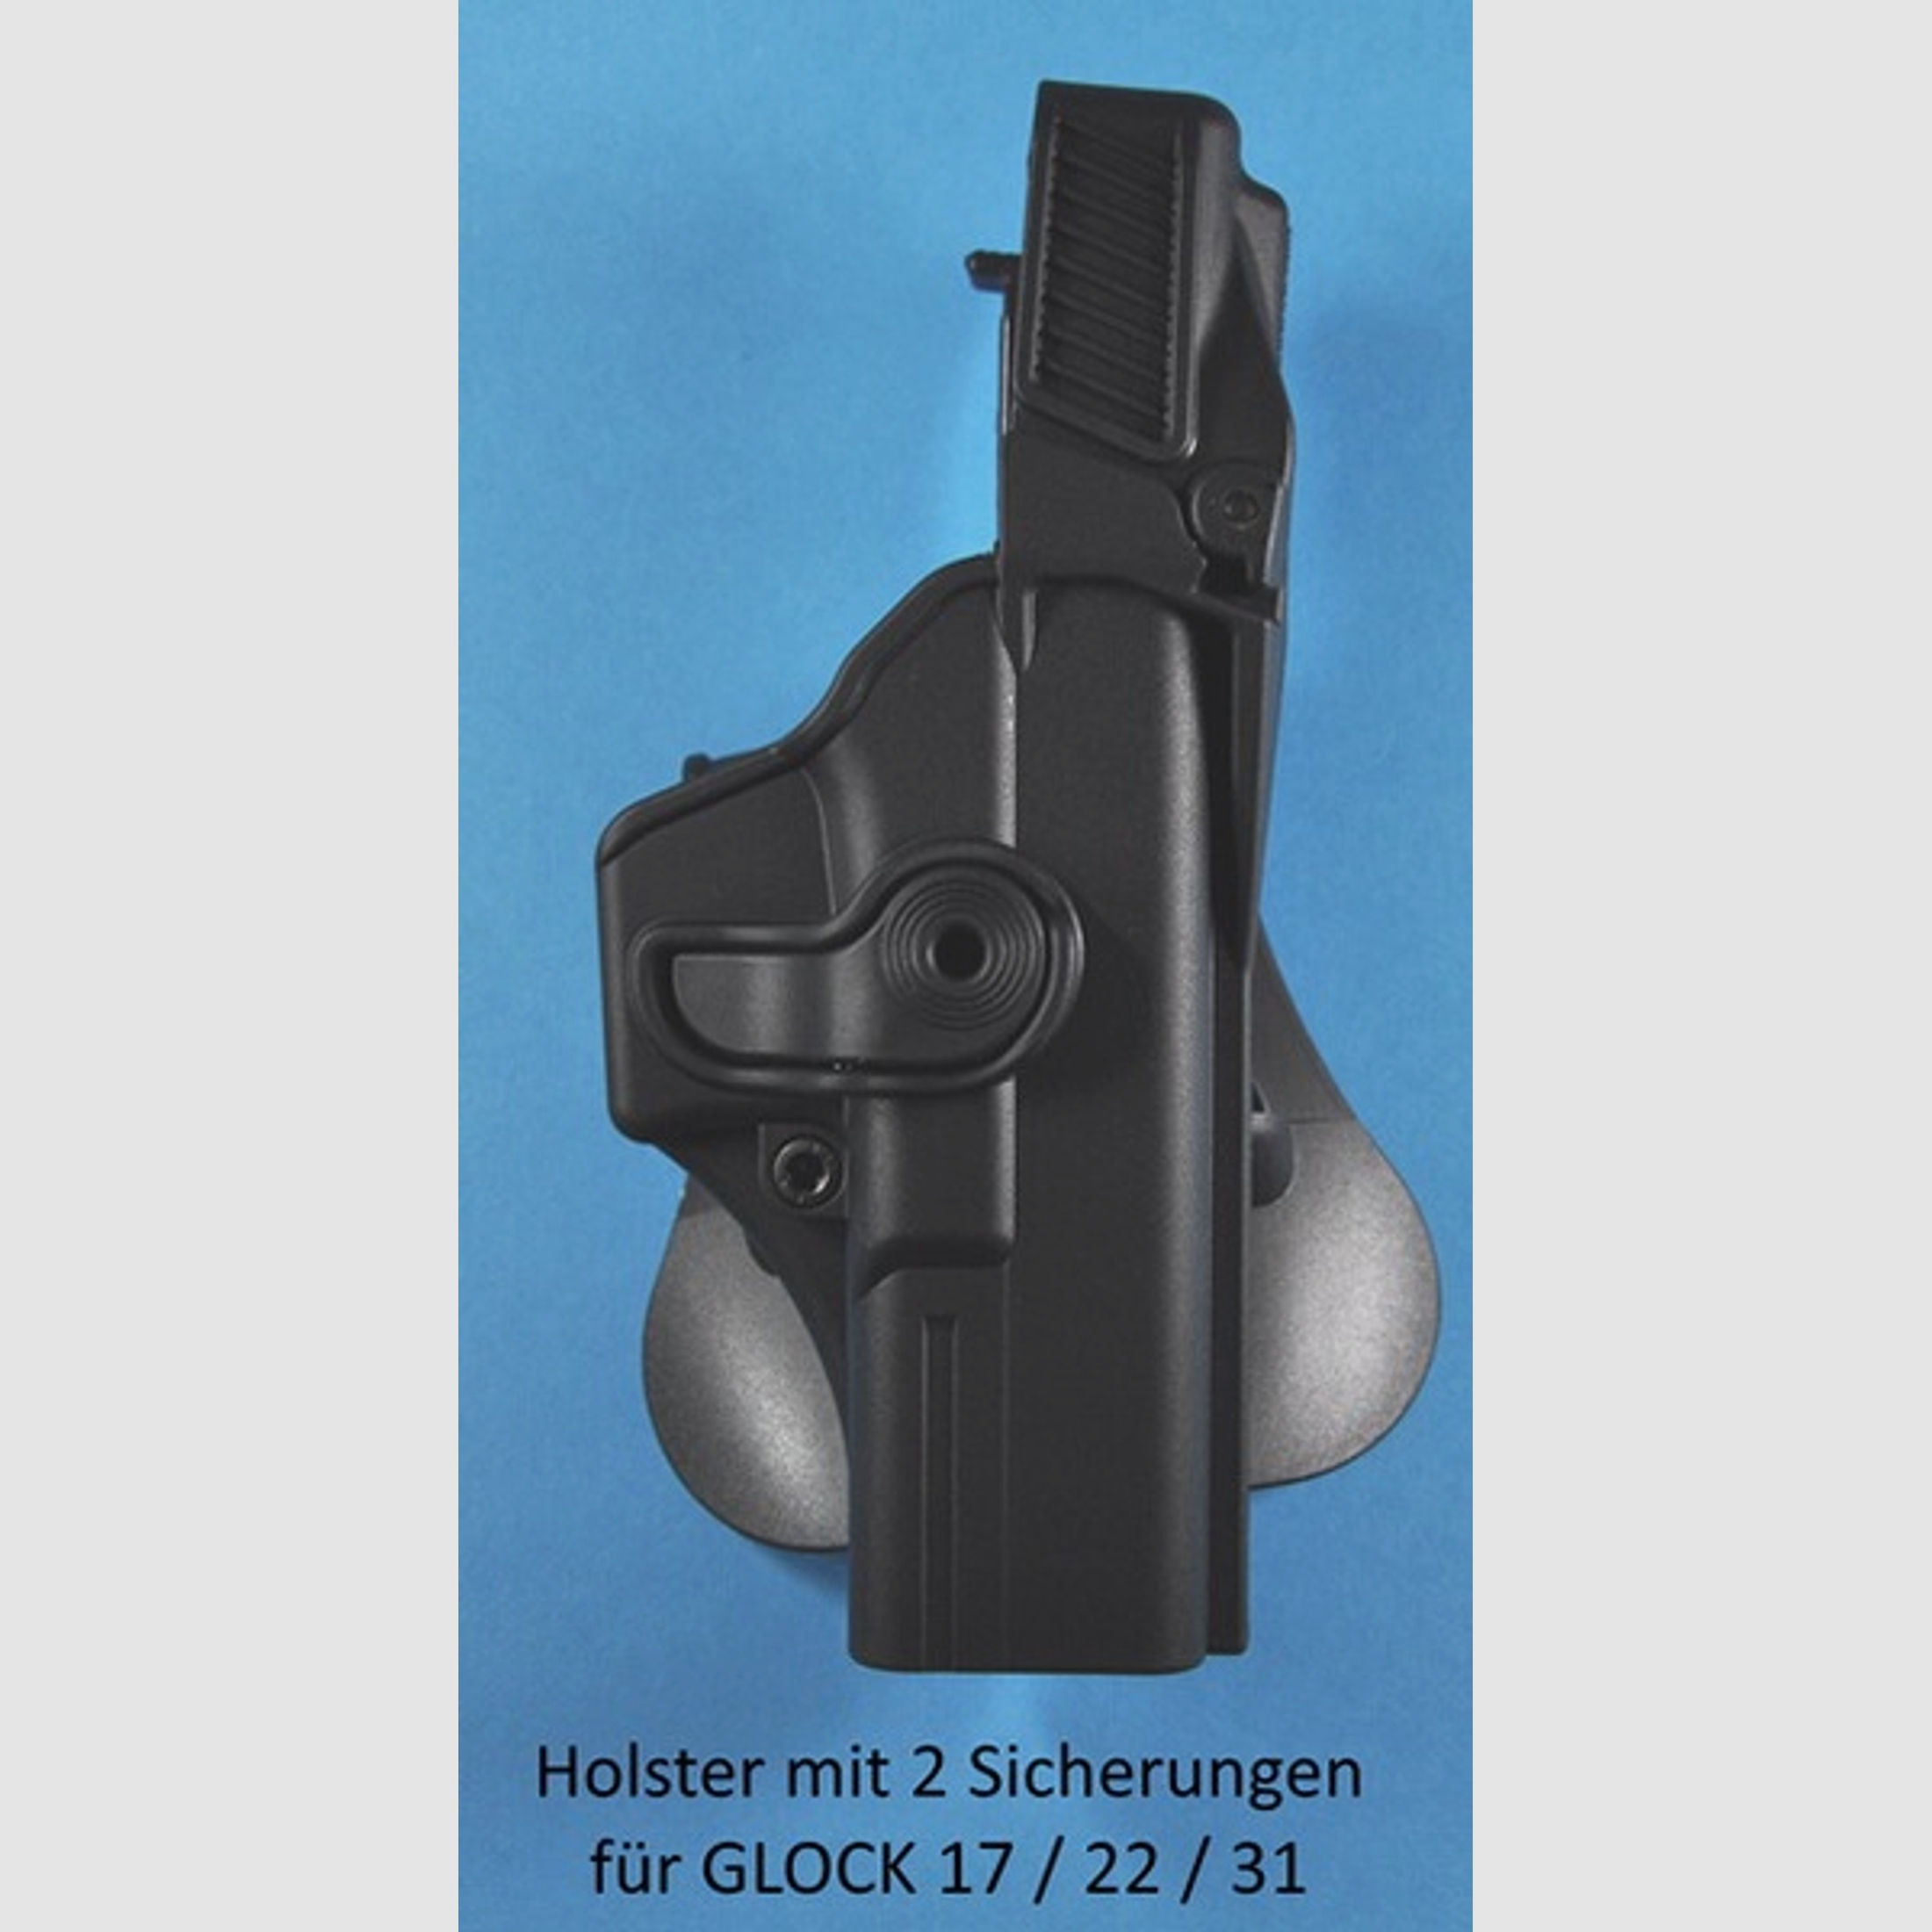 schwenkbares Paddle-Holster für GLOCK 17 / 22 / 28 / 31 Pistolen mit doppelter Zugriff-Sicherung